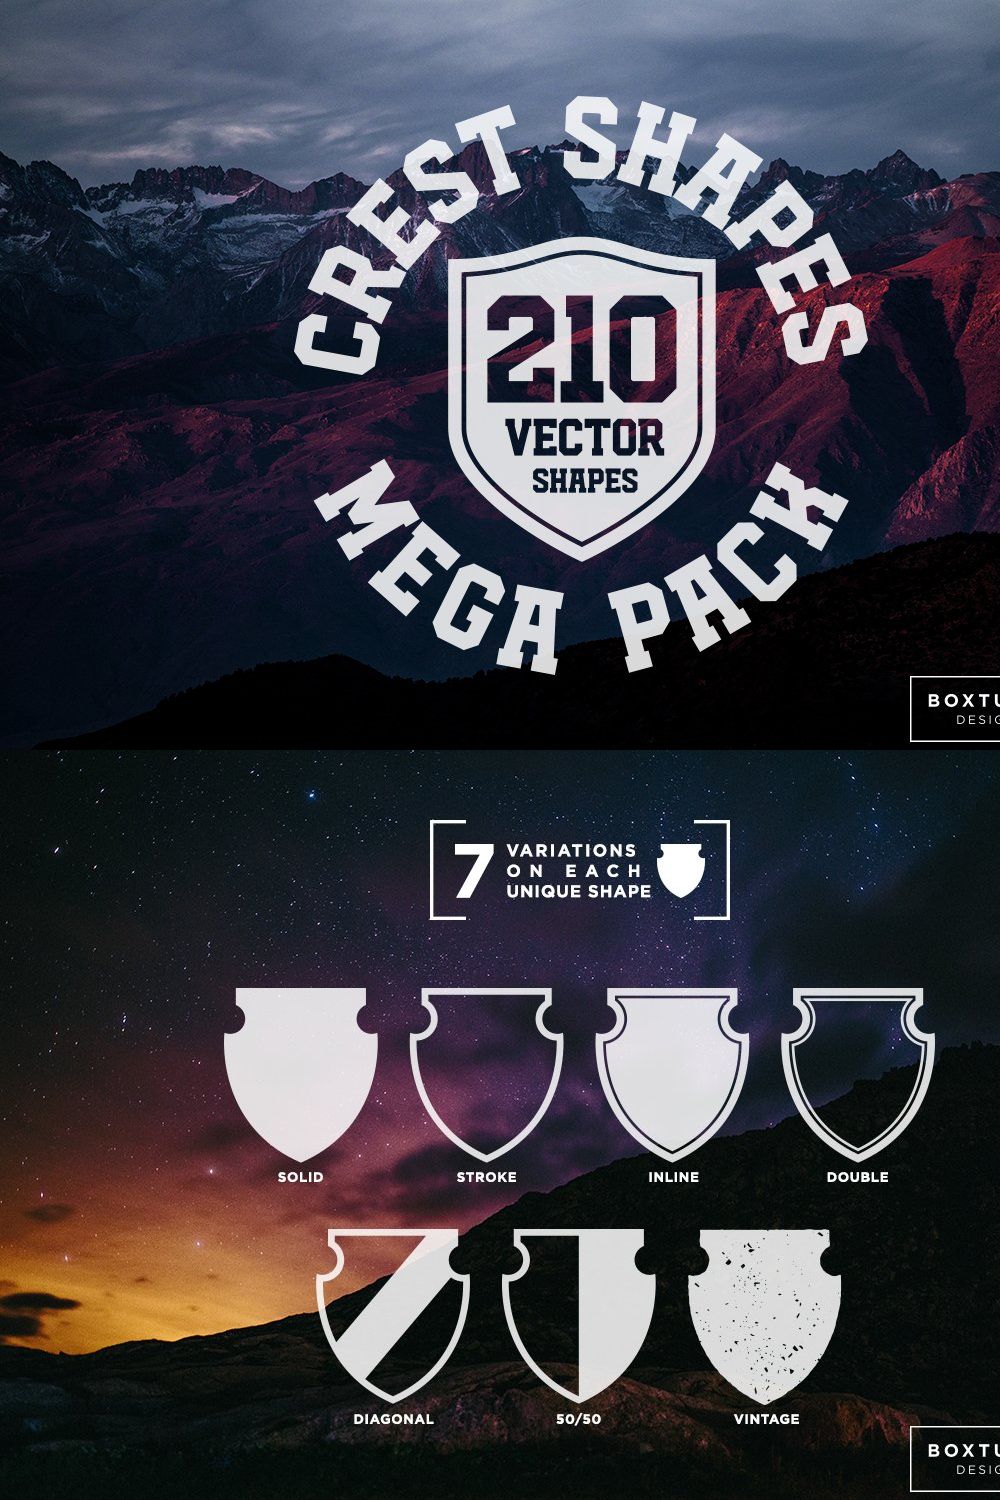 Crest Shapes Mega Pack pinterest preview image.